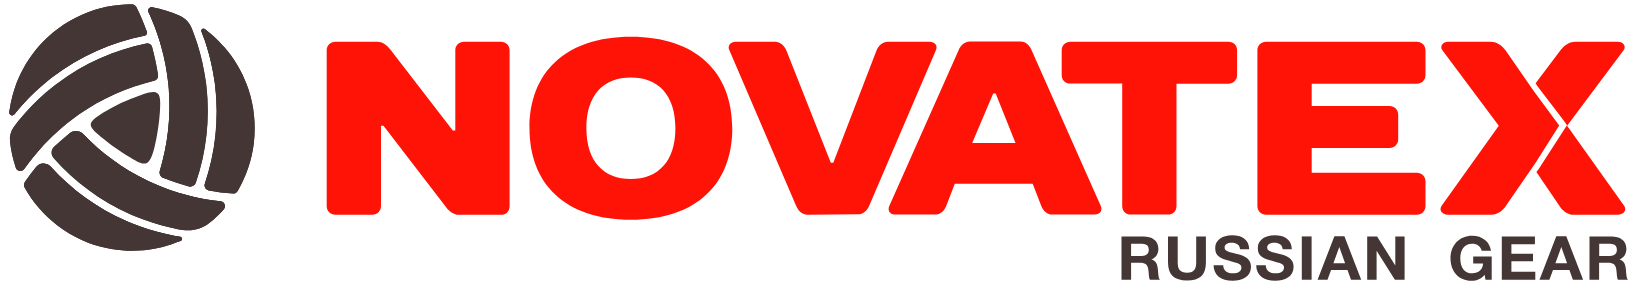 логотип NOVATEX